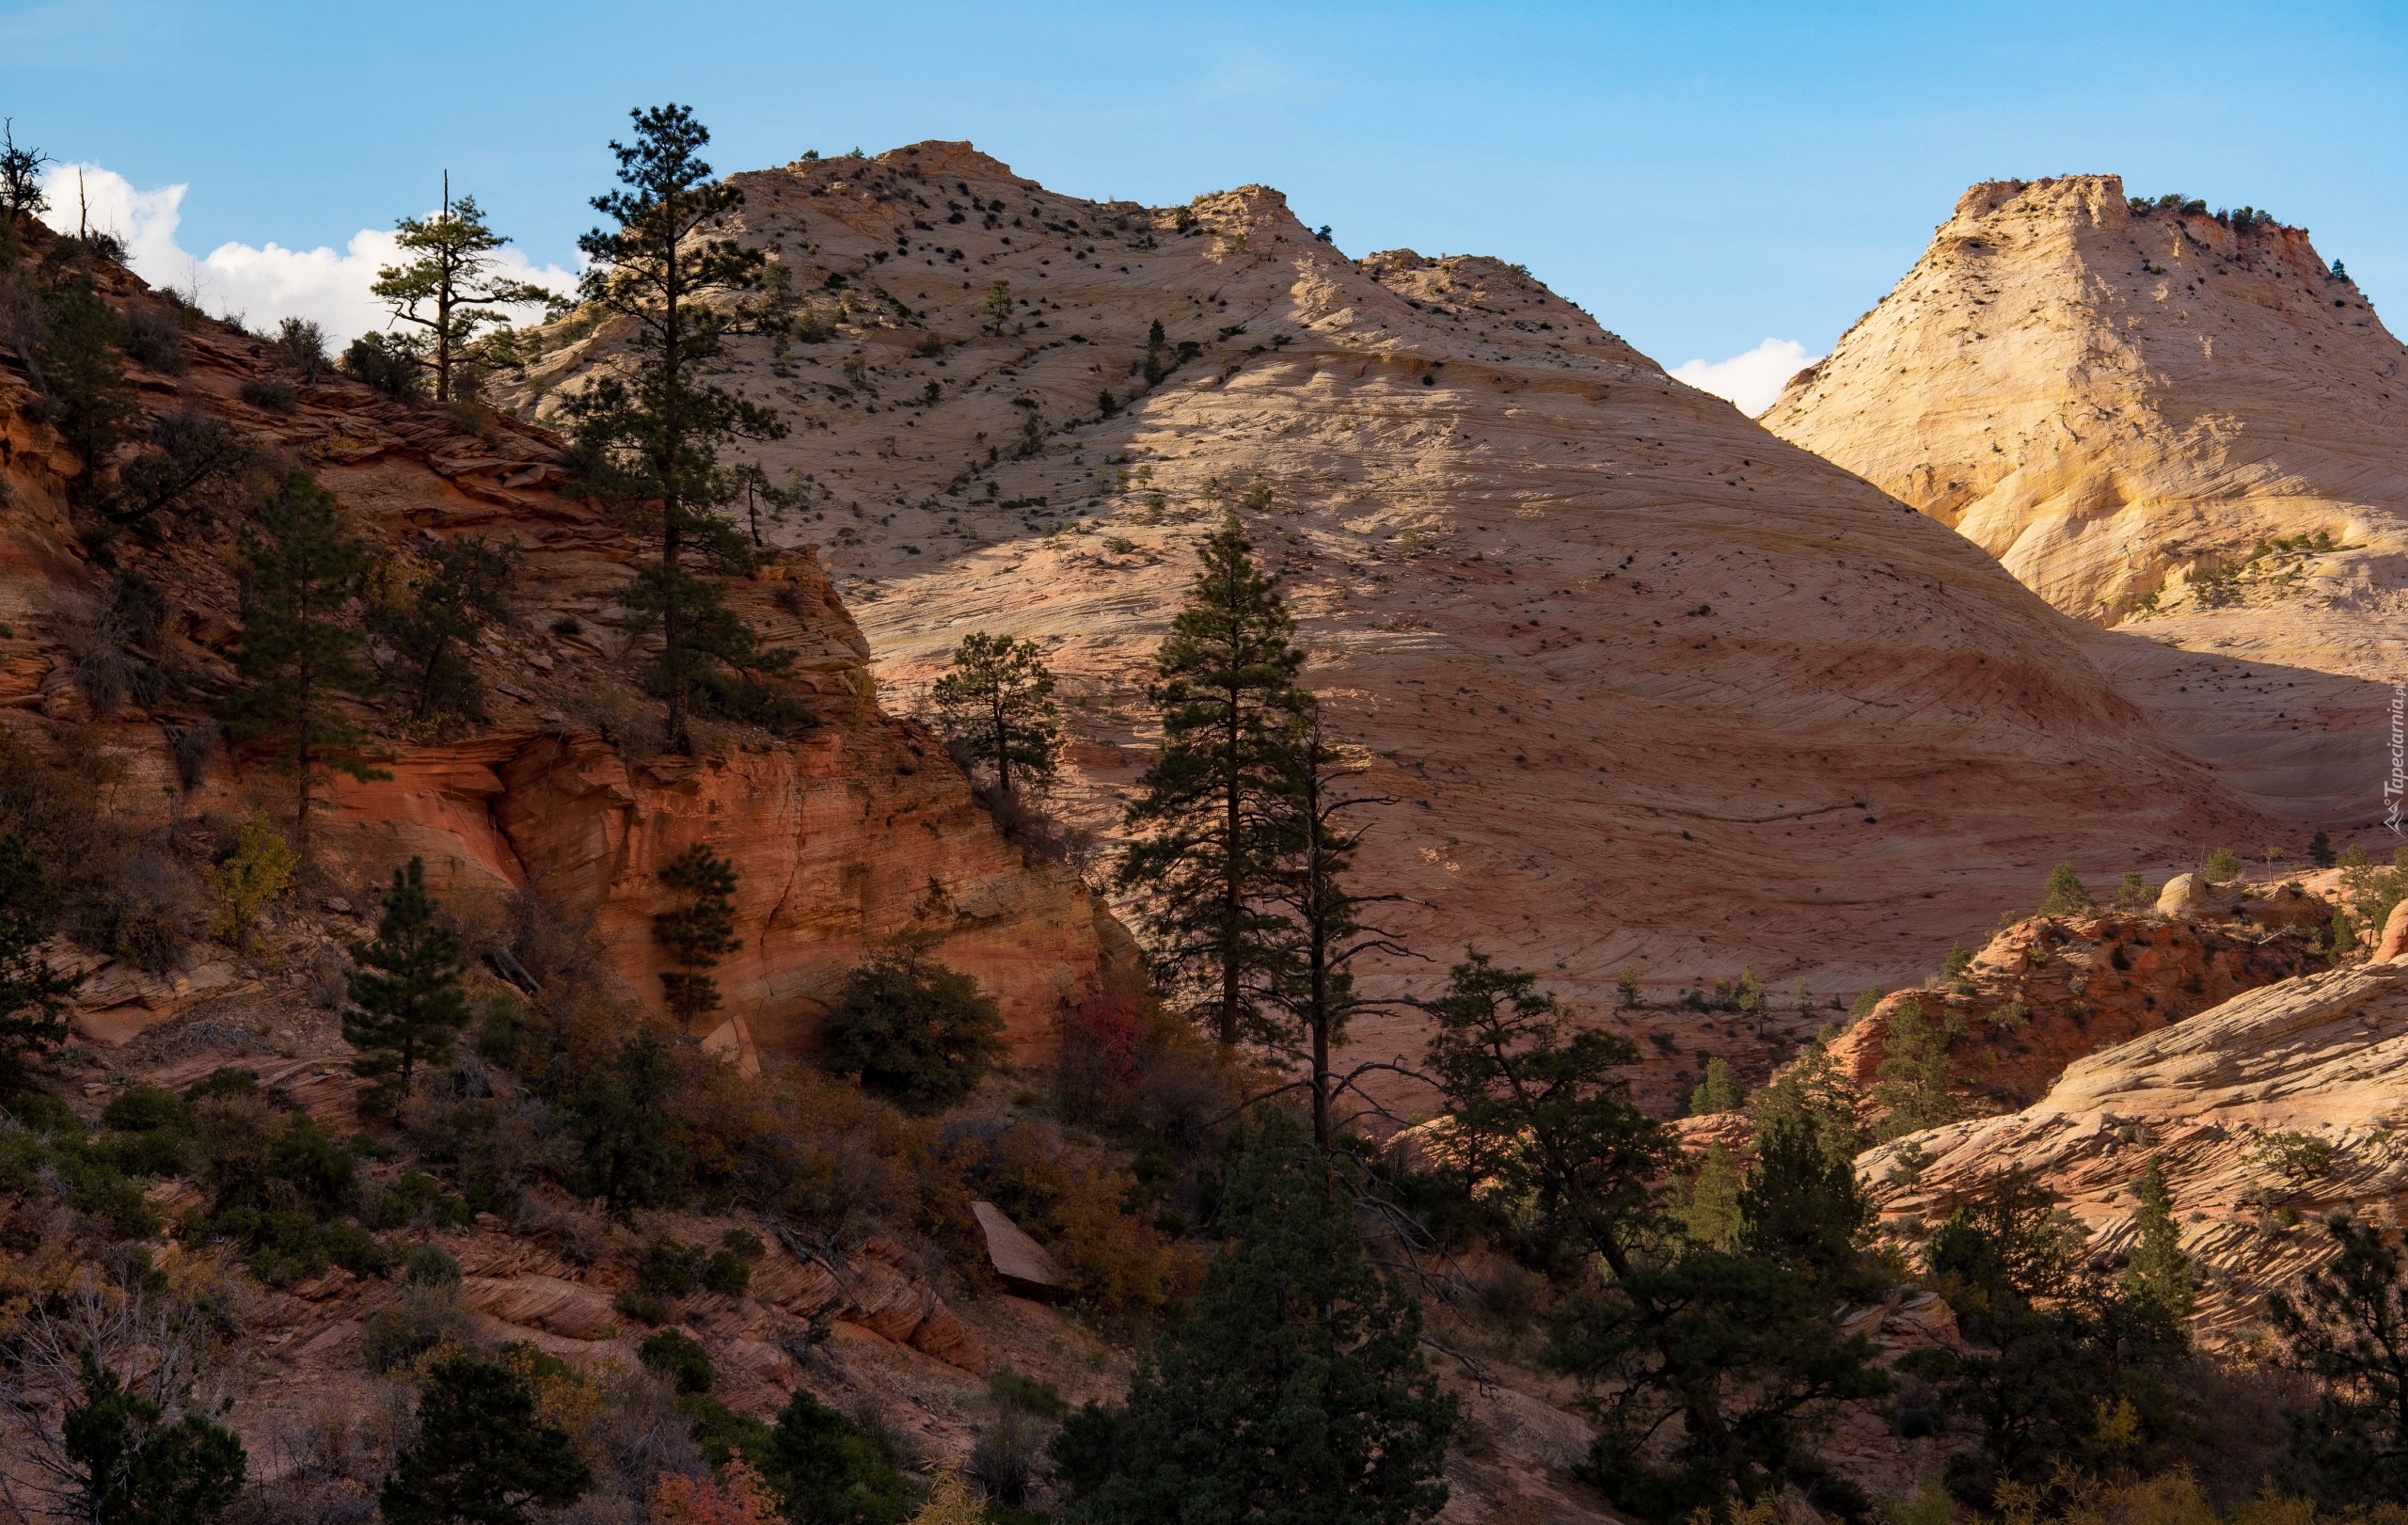 Park Narodowy Zion, Drzewa, Góry, Skały, Stan Utah, Stany Zjednoczone